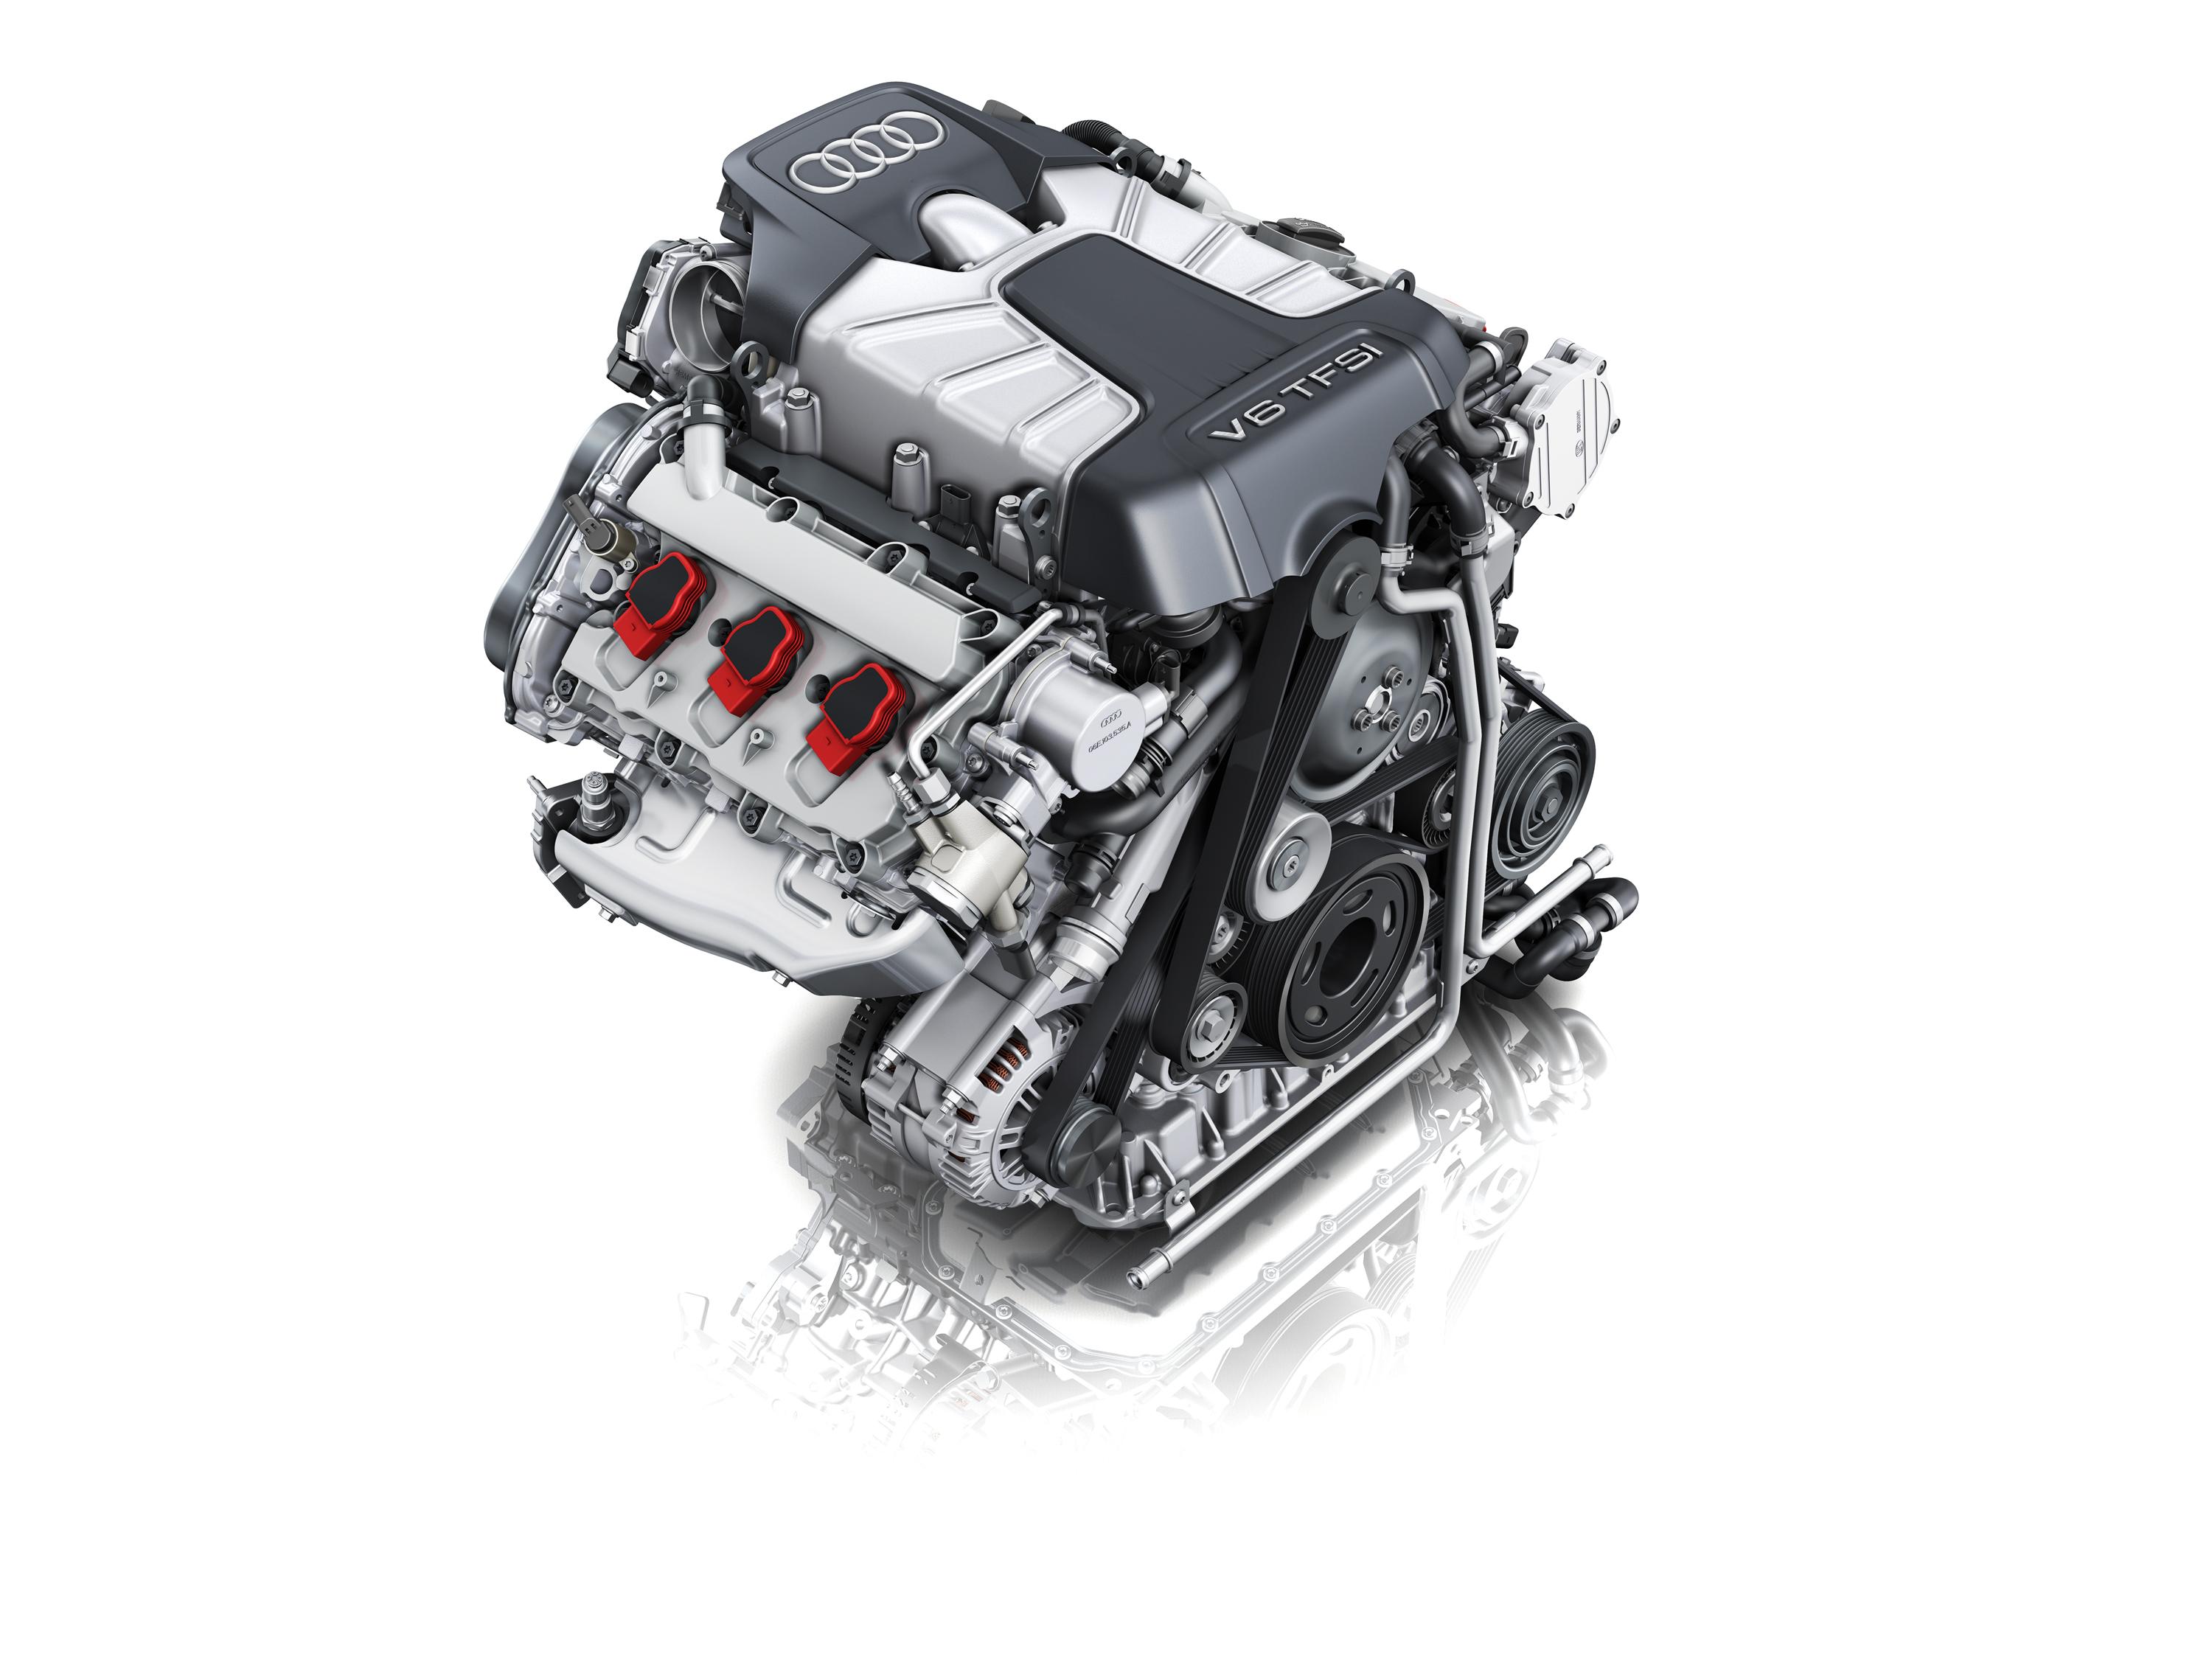 发动机:发动机是汽车的心脏,是给汽车提供给动力的装备,主流的发动机